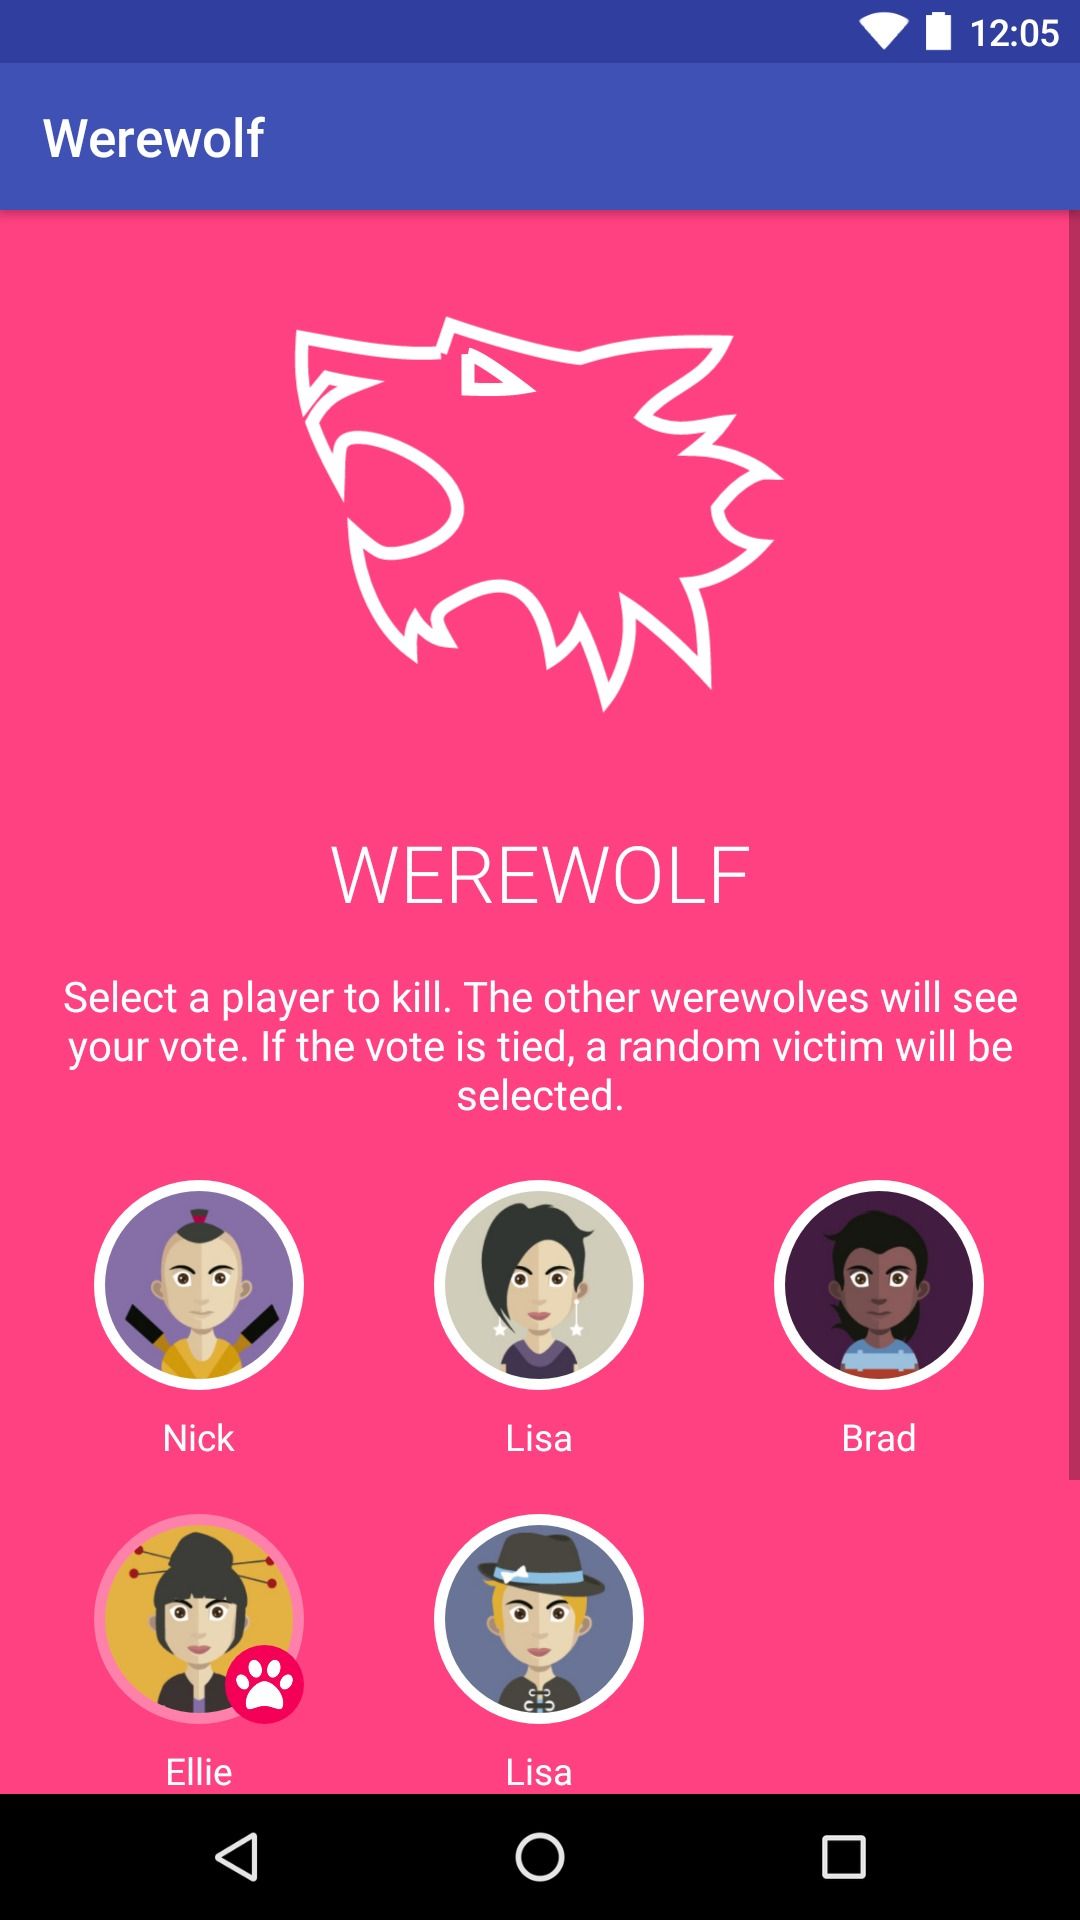 aplicativo mostrando tela rosa com ícone de lobo